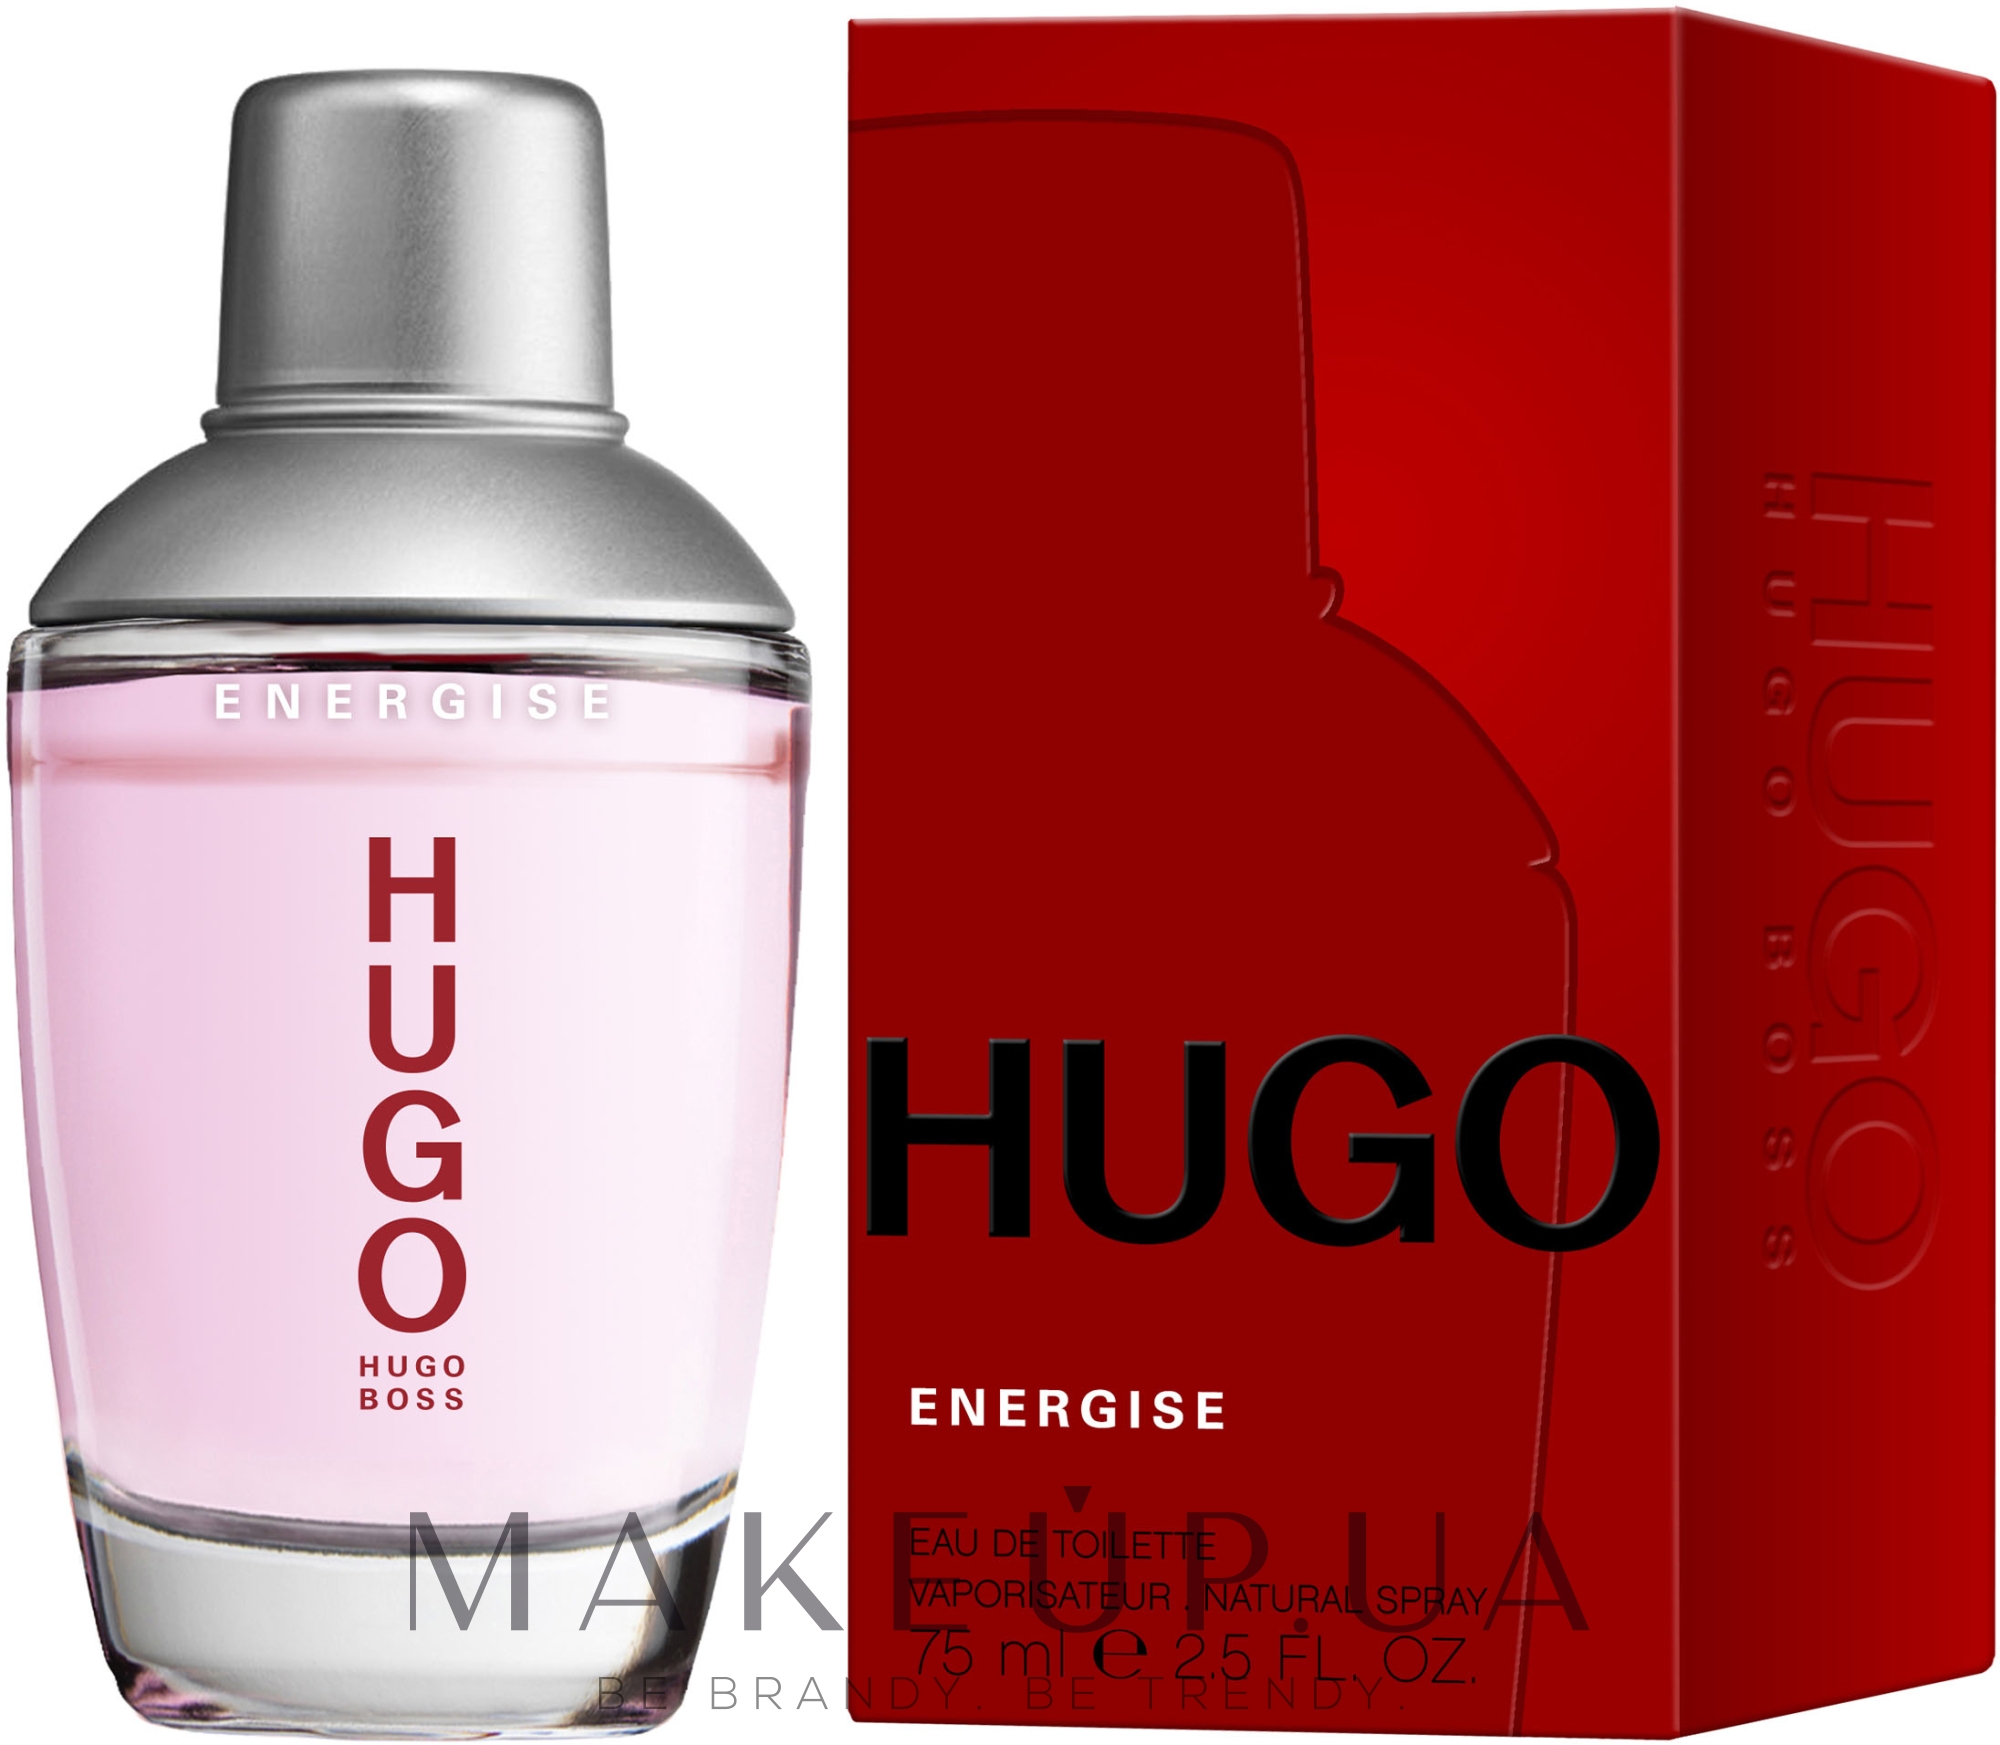 Хуго босс описание. Hugo Boss Energise 75ml. Hugo Boss Energise men 75ml EDT. Boss Hugo Energise men 75ml. Духи Hugo Boss Energise мужские.